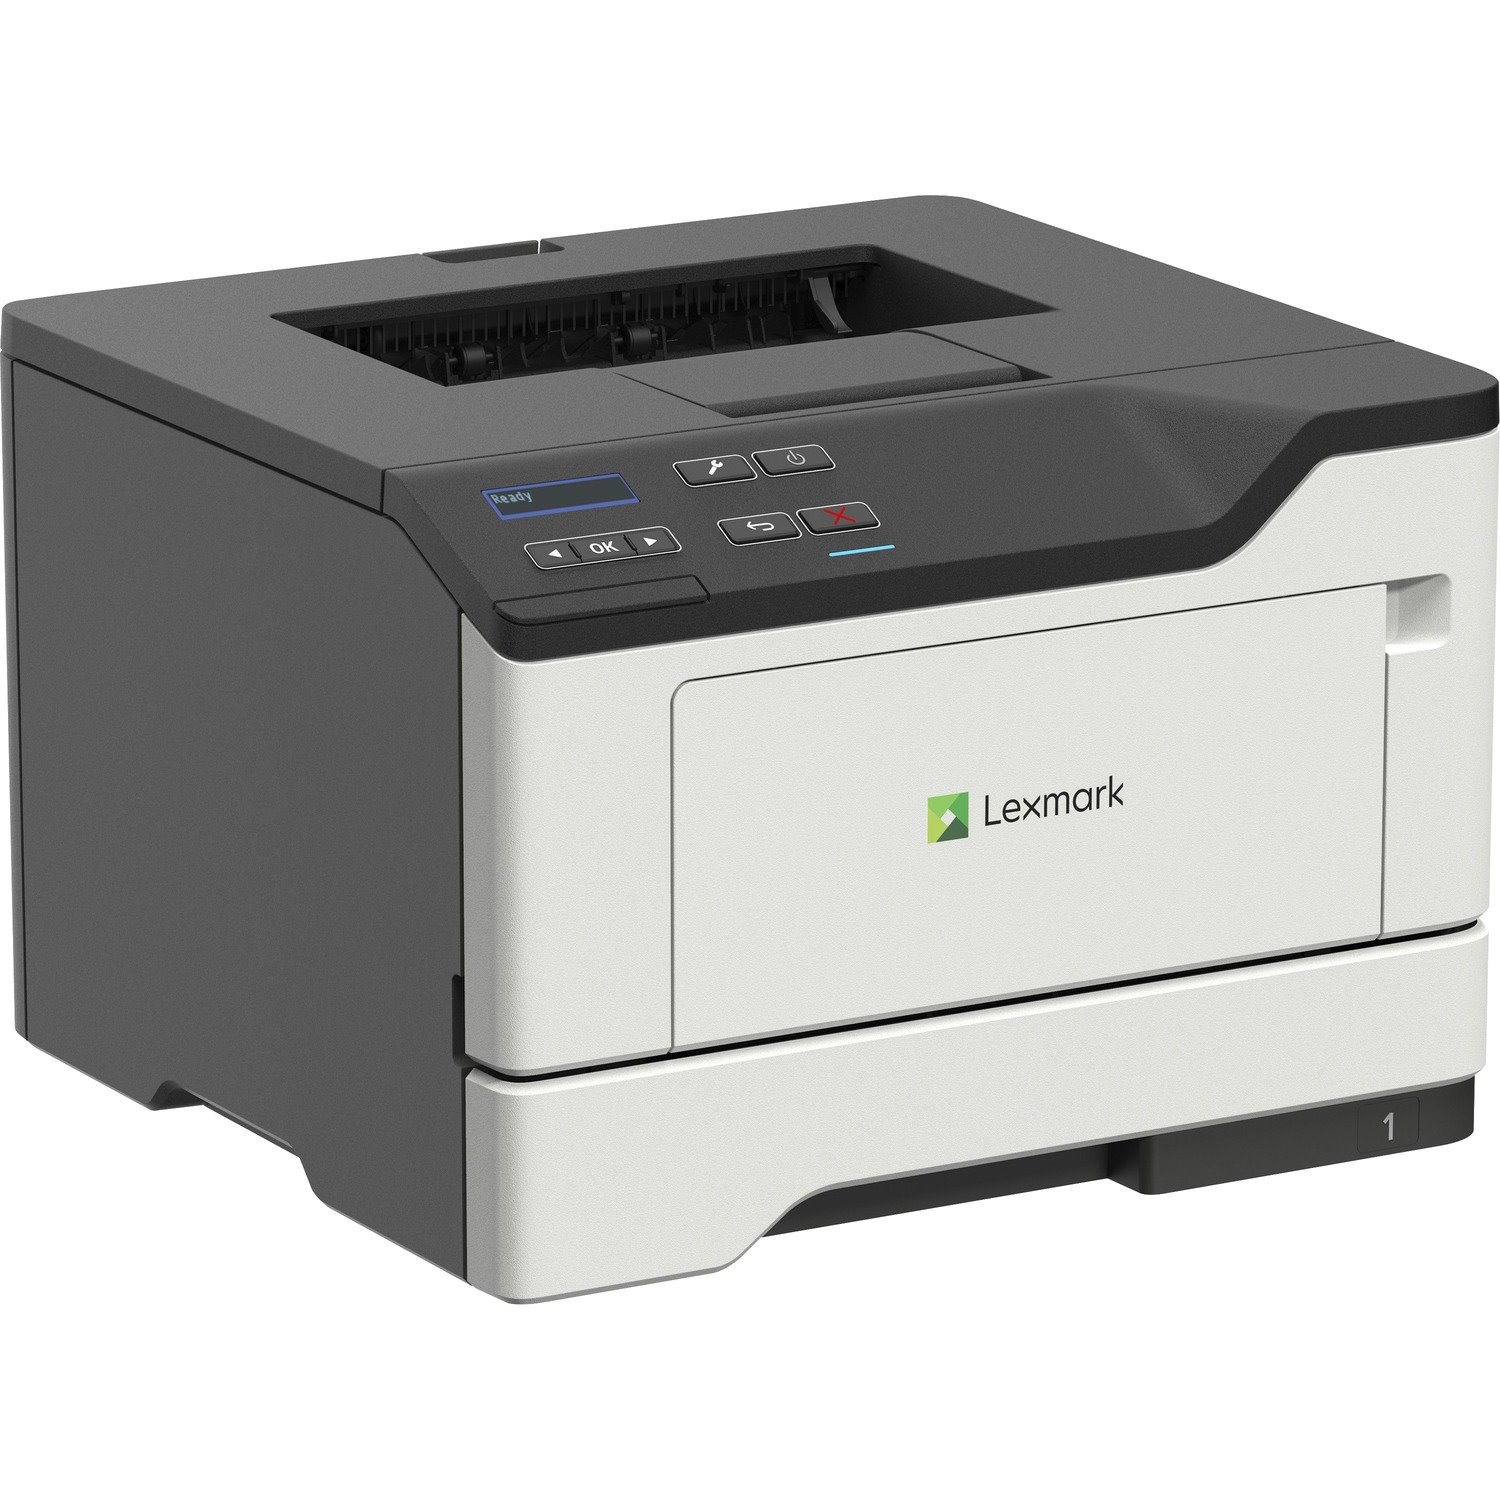 Lexmark B2442dw Desktop Laser Printer - Monochrome